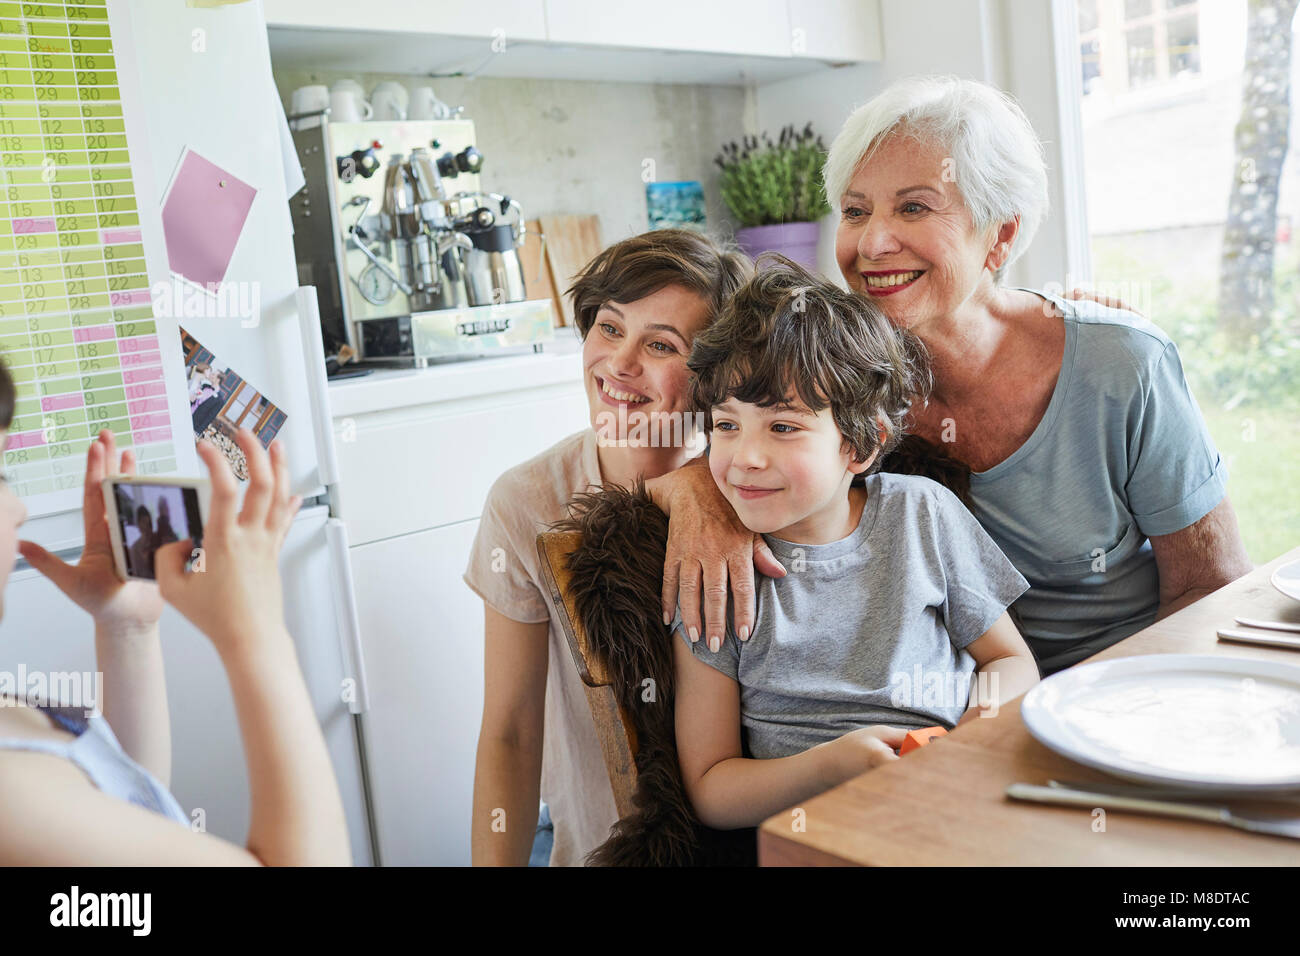 Junge Mädchen fotografieren, Bruder, Mutter und Großmutter, mit Smartphone Stockfoto